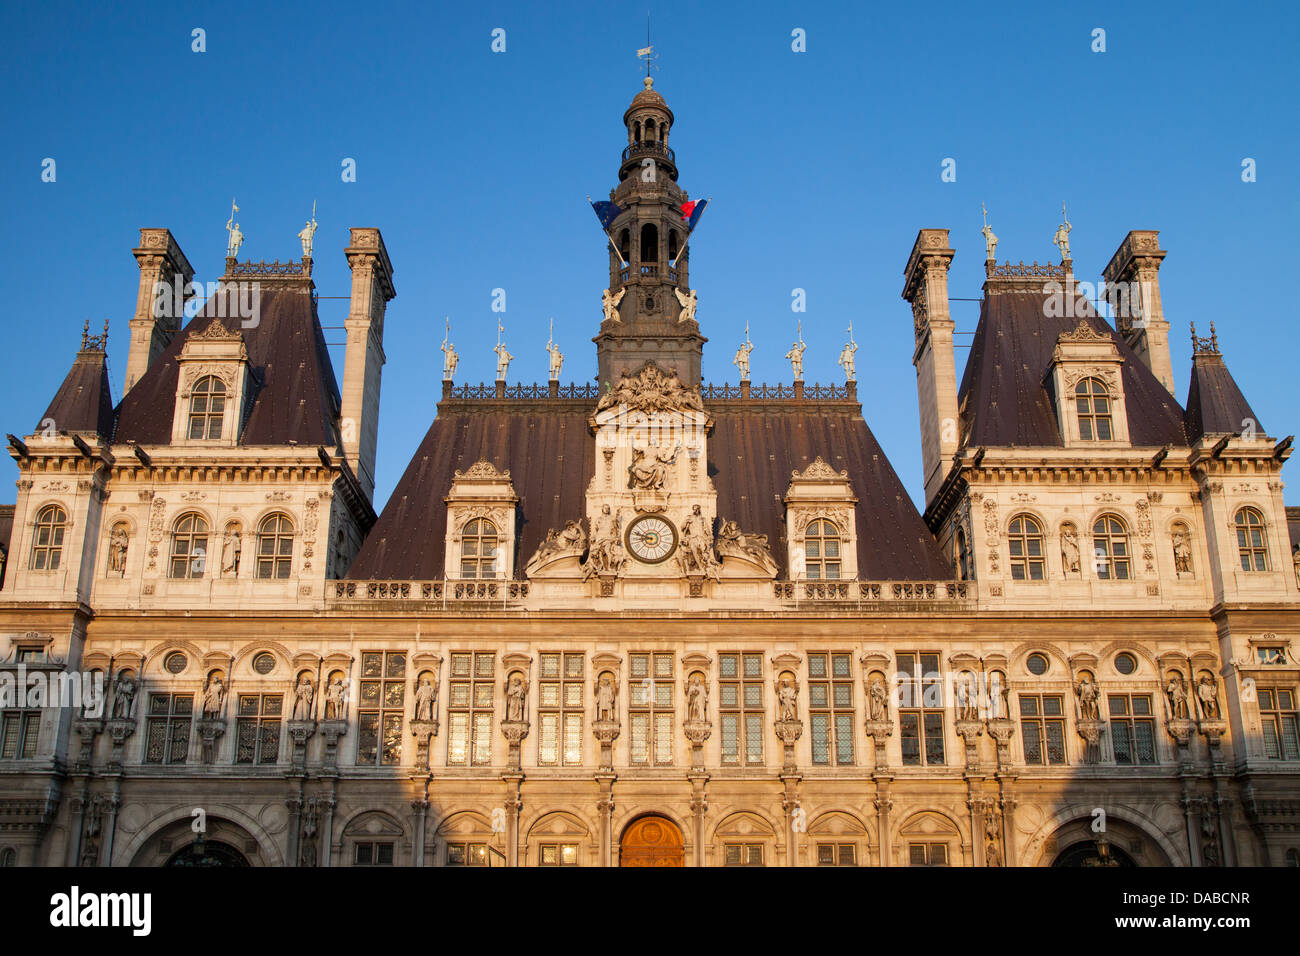 Ornate Hotel de Ville (Construit 1628), 1892 - Paris, France Banque D'Images